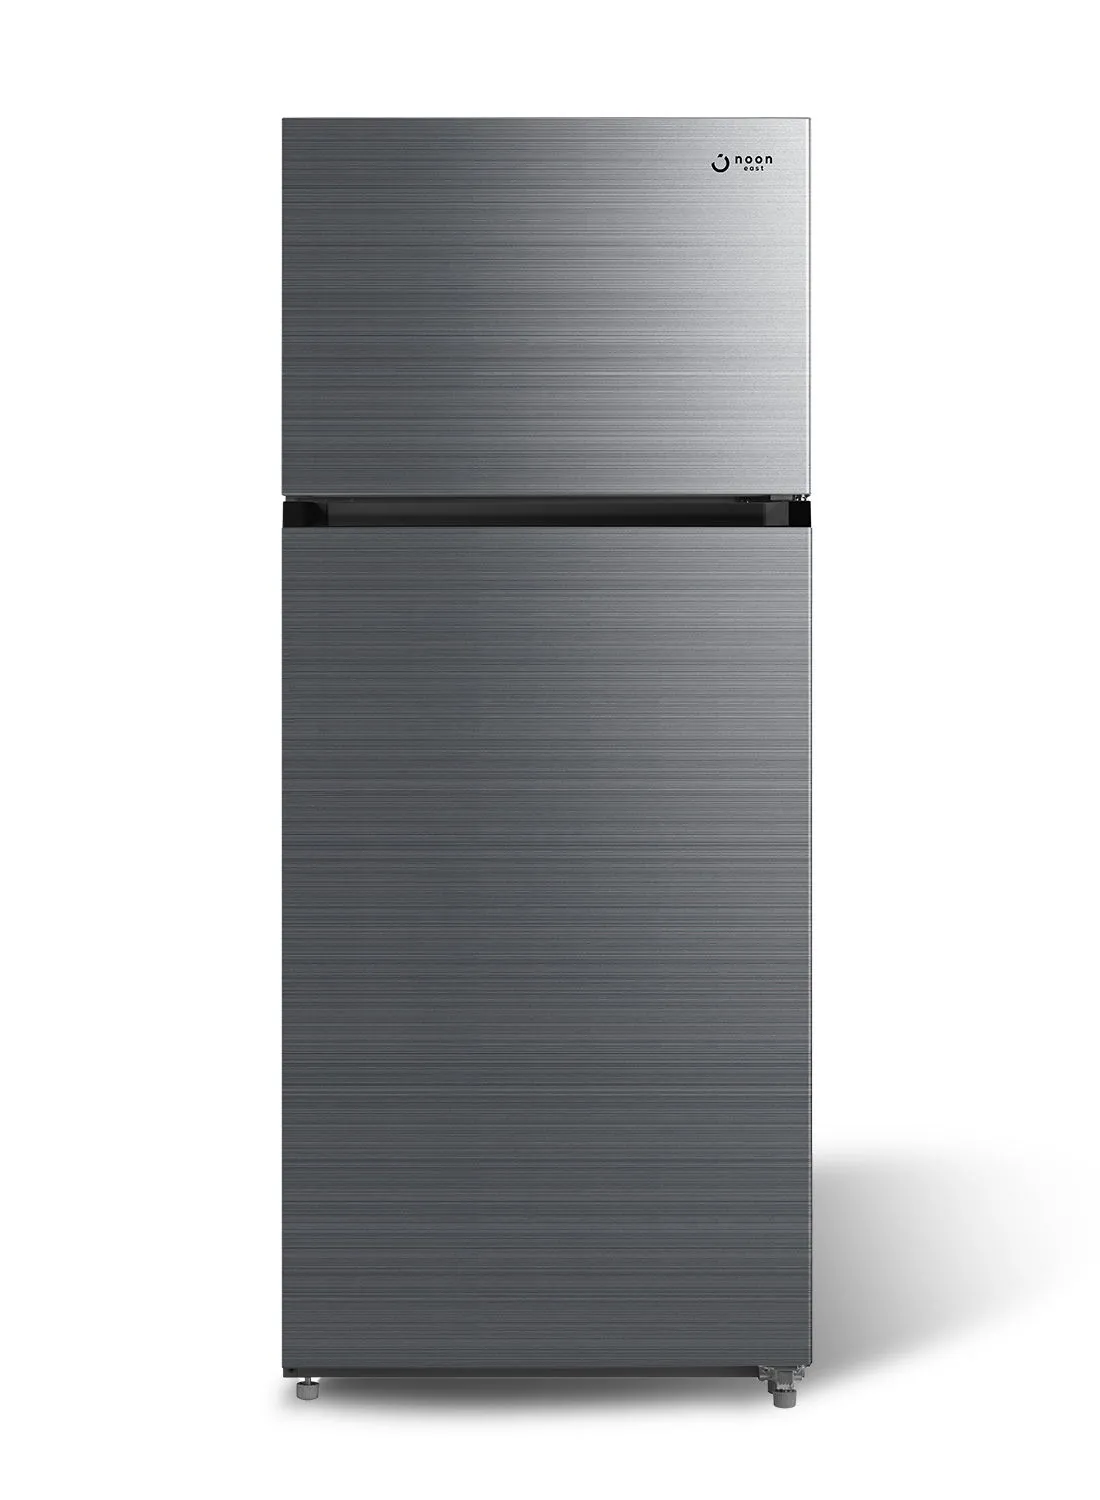 noon east Refrigerator Double Door Fridge - (20 Cu. Ft |570 Liter Gross) 535 Liter Inverter Frost Free